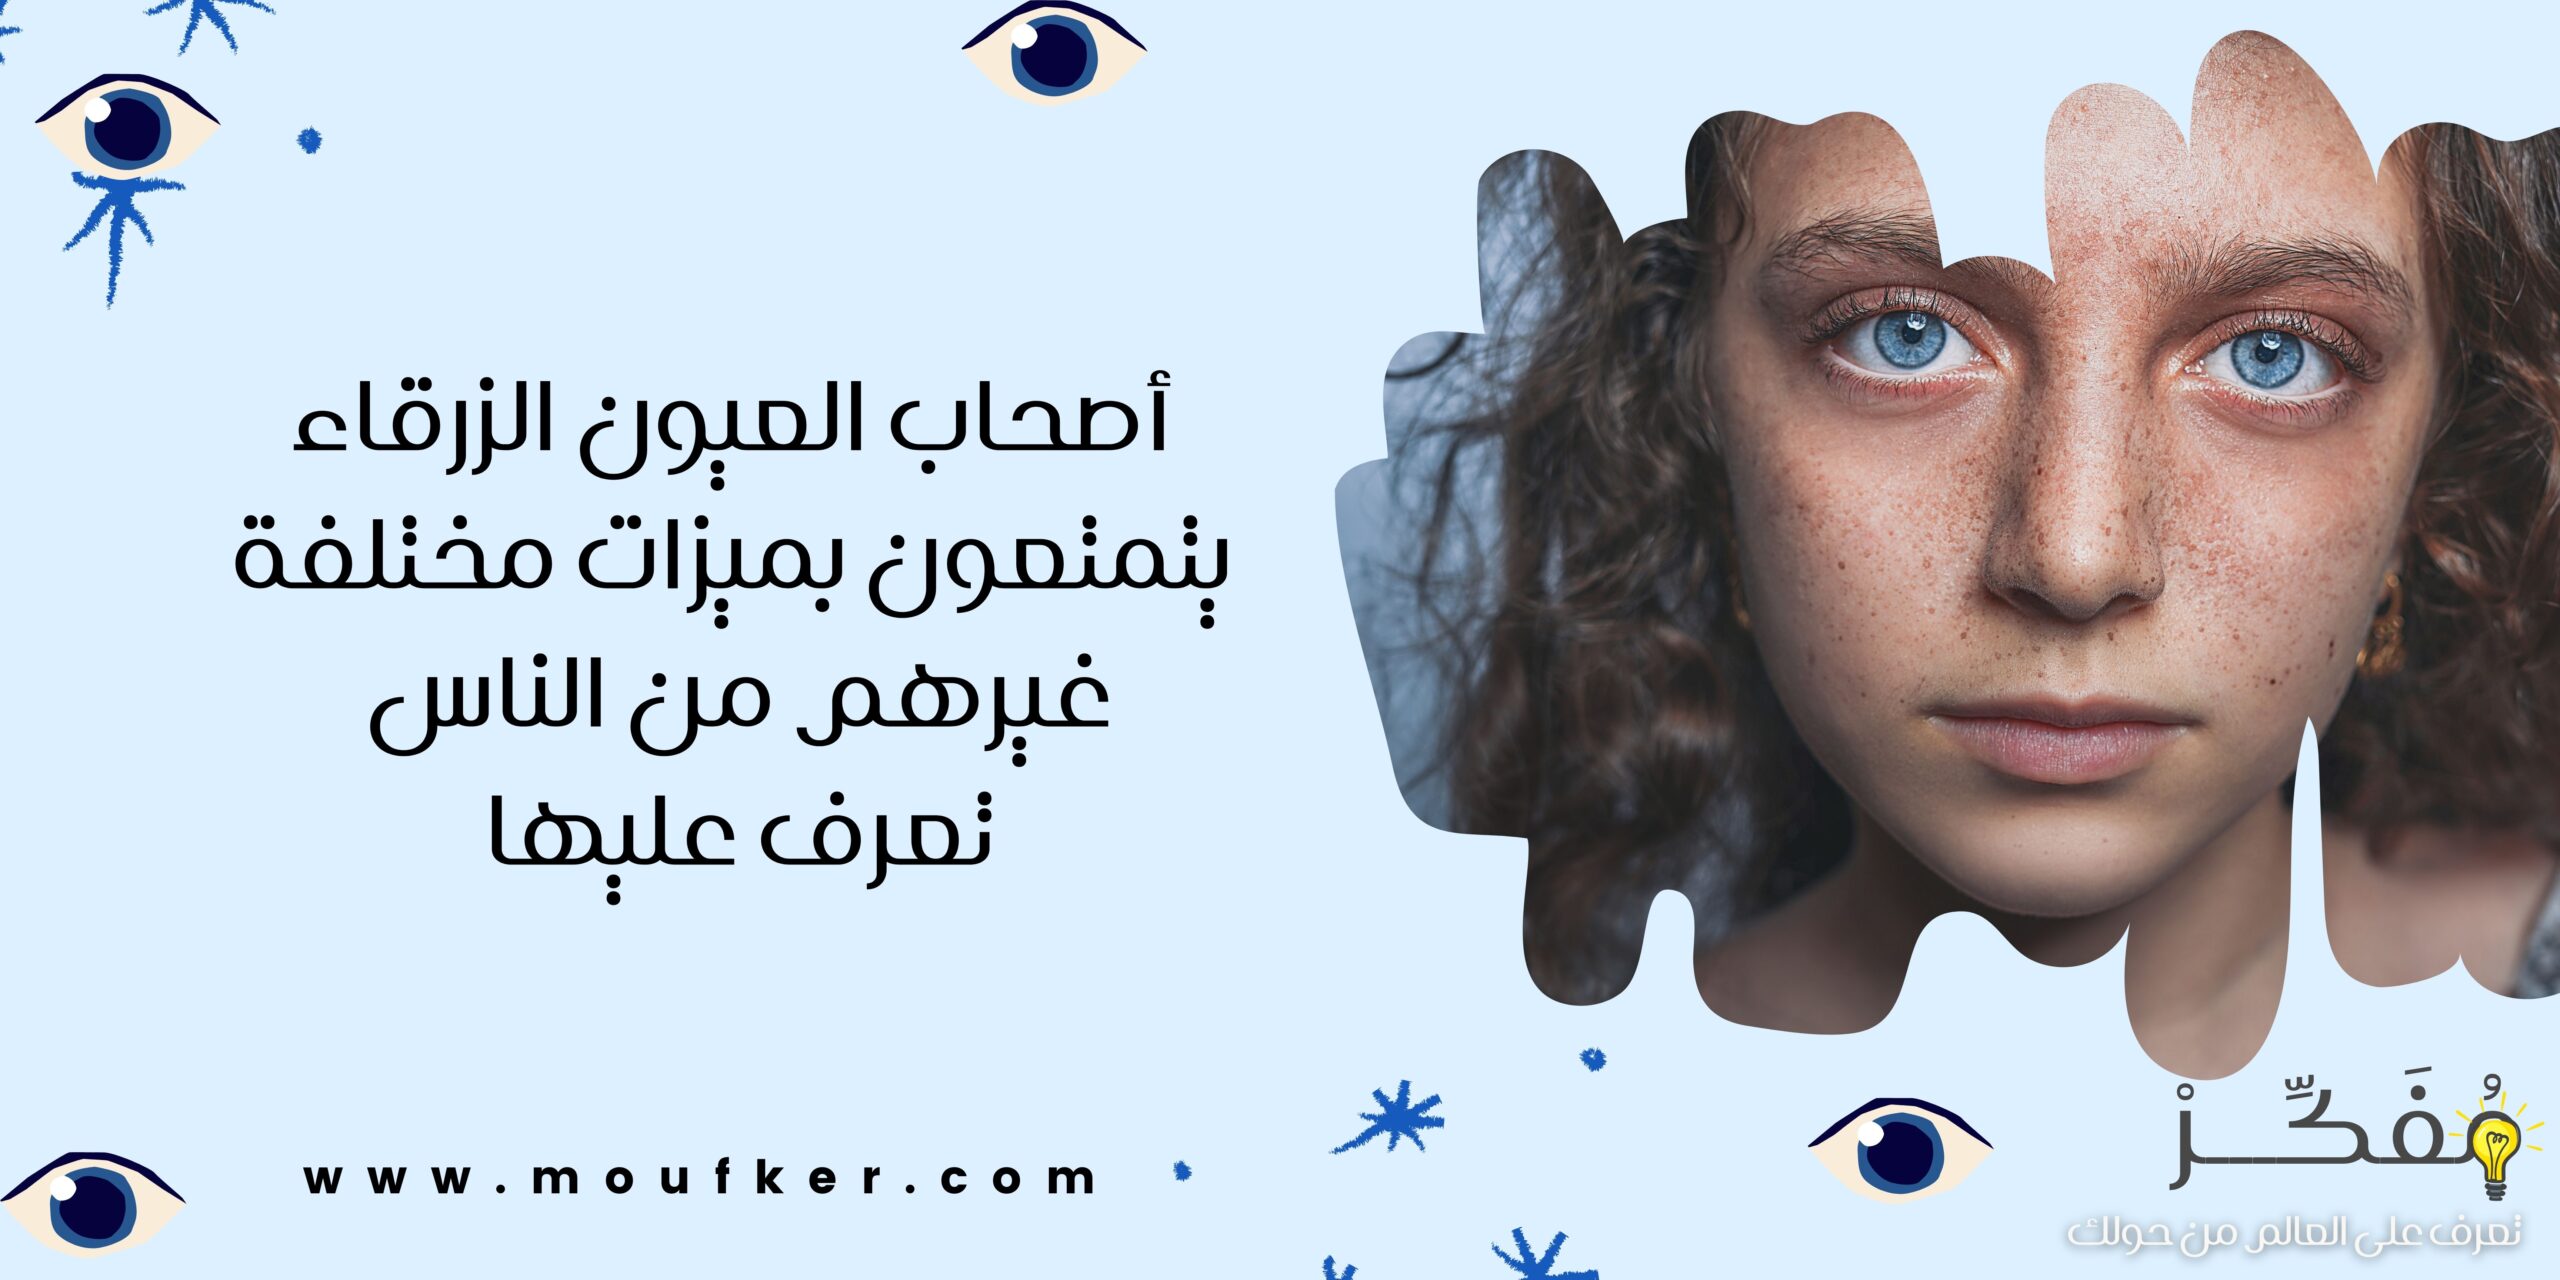 أصحاب العيون الزرقاء يتمتعون بميزات مختلفة غيرهم من الناس .. تعرف عليها